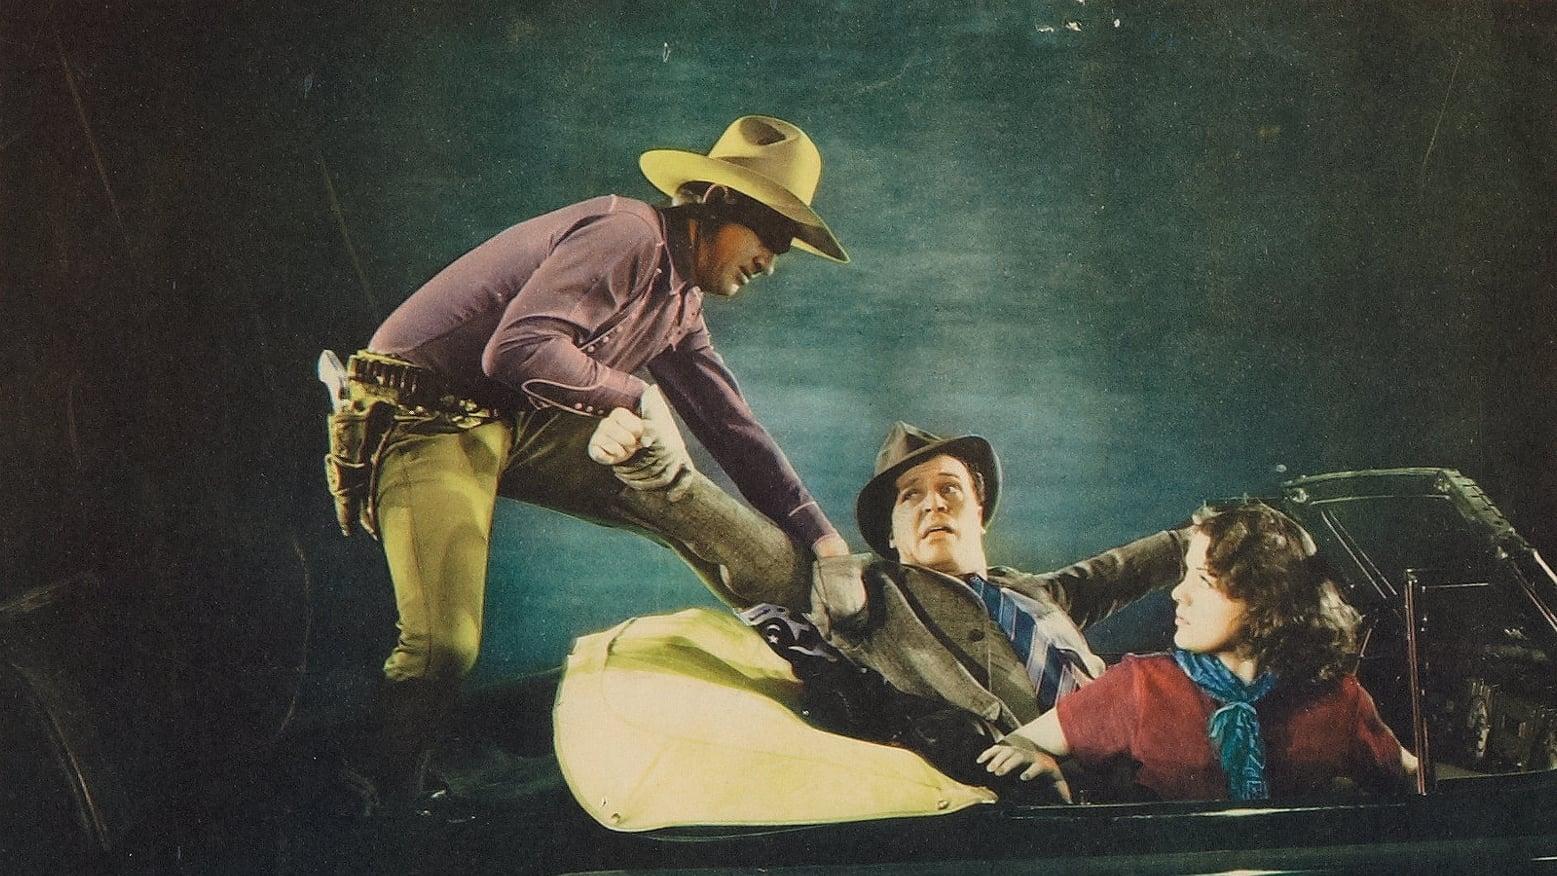 J.L. Franks' Golden West Cowboys backdrop